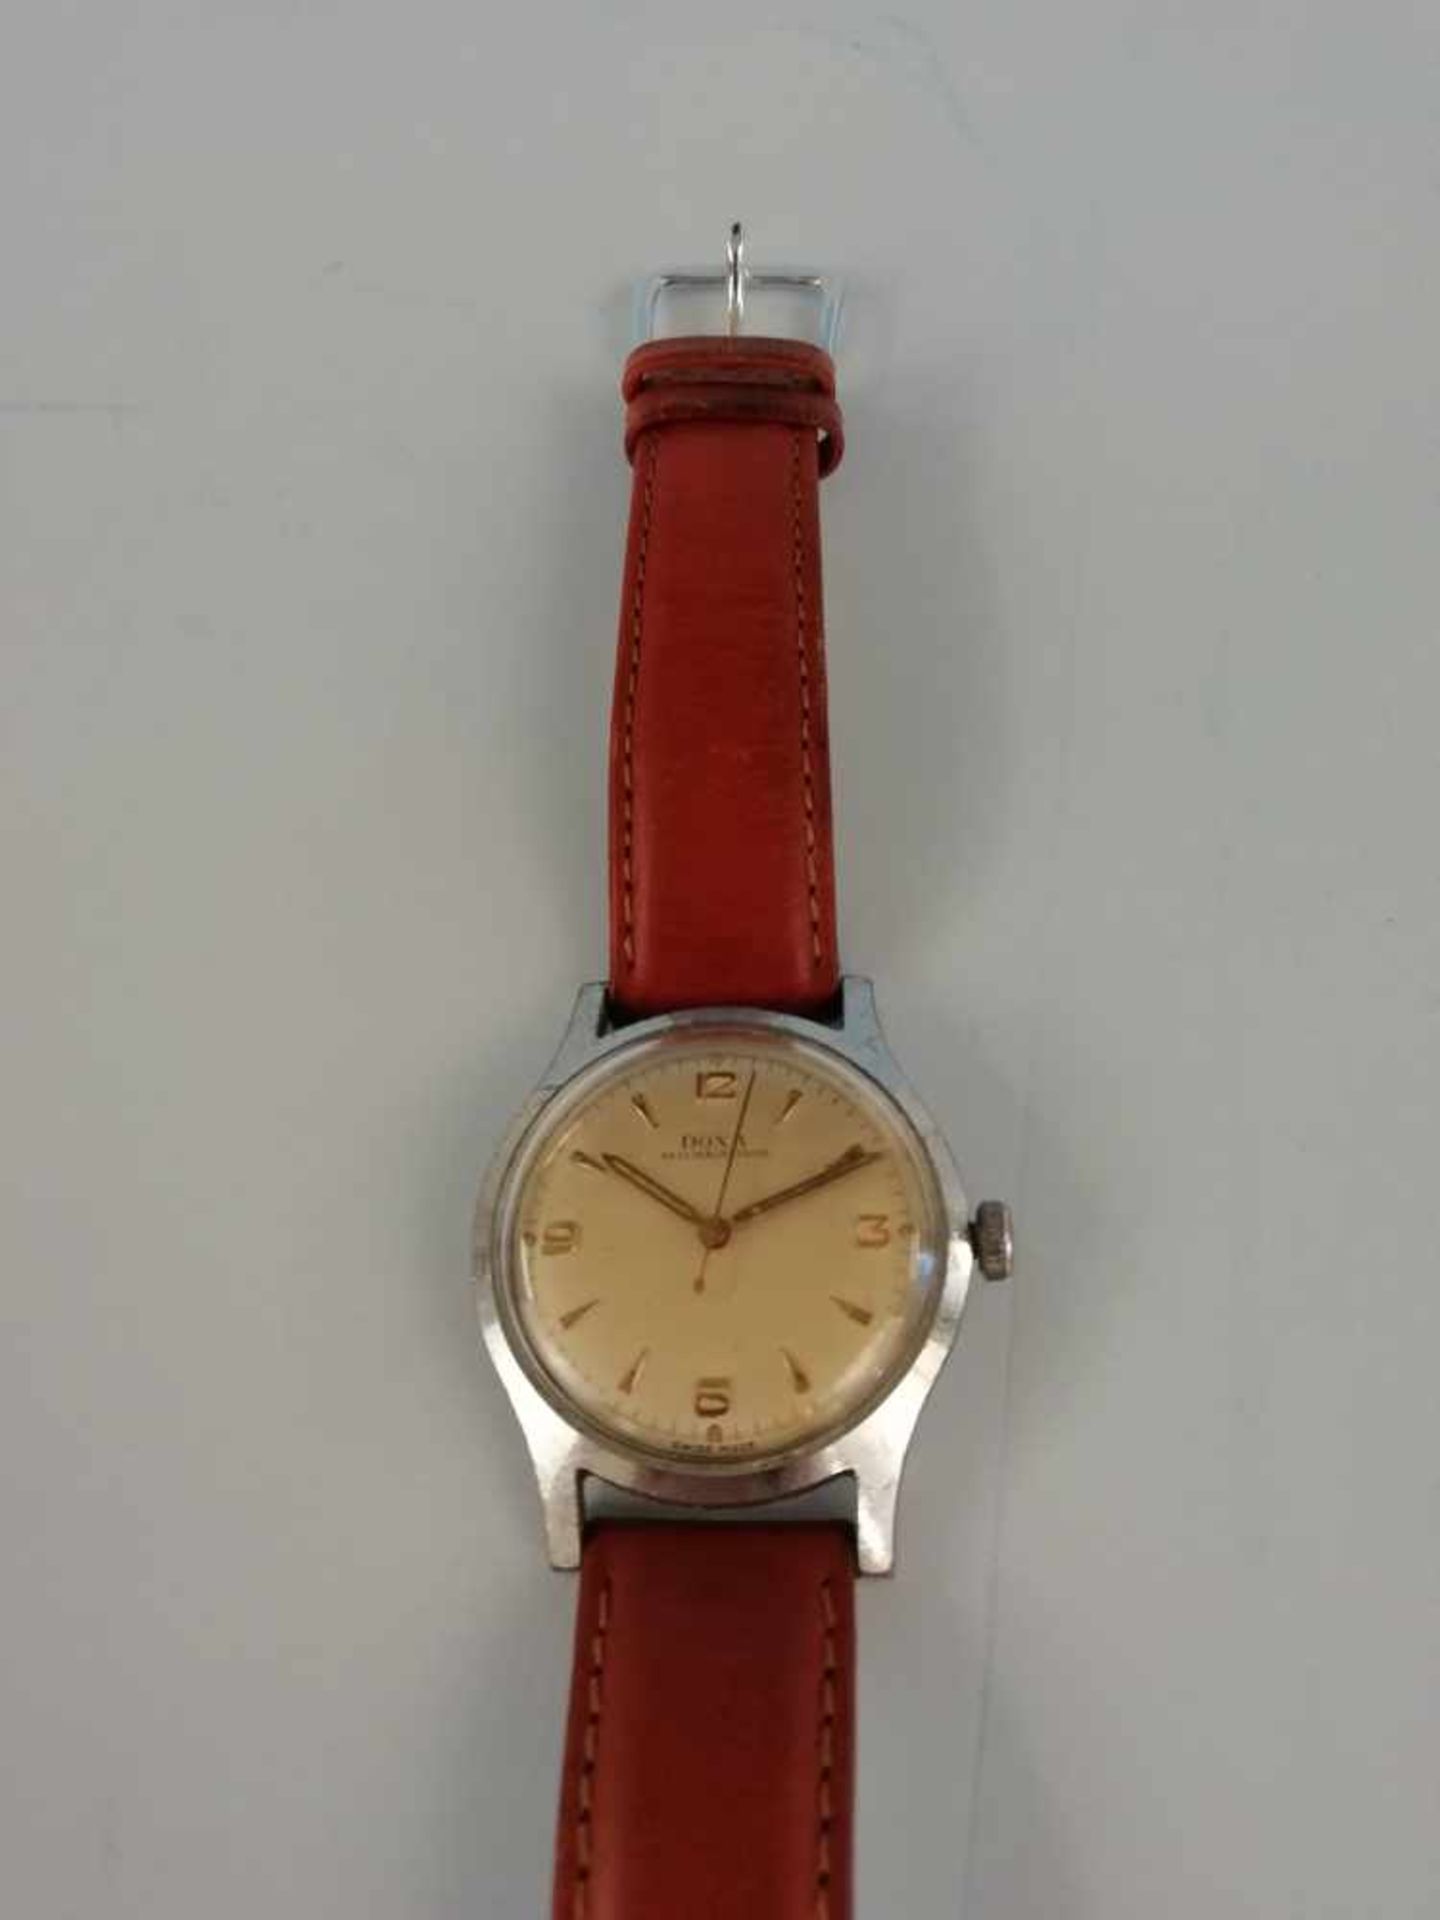 Armbanduhr "Doxa"Metall, Vintage, Ankerwerk, braunes Lederband, 39,1g, Werkservice wird empfohlen,